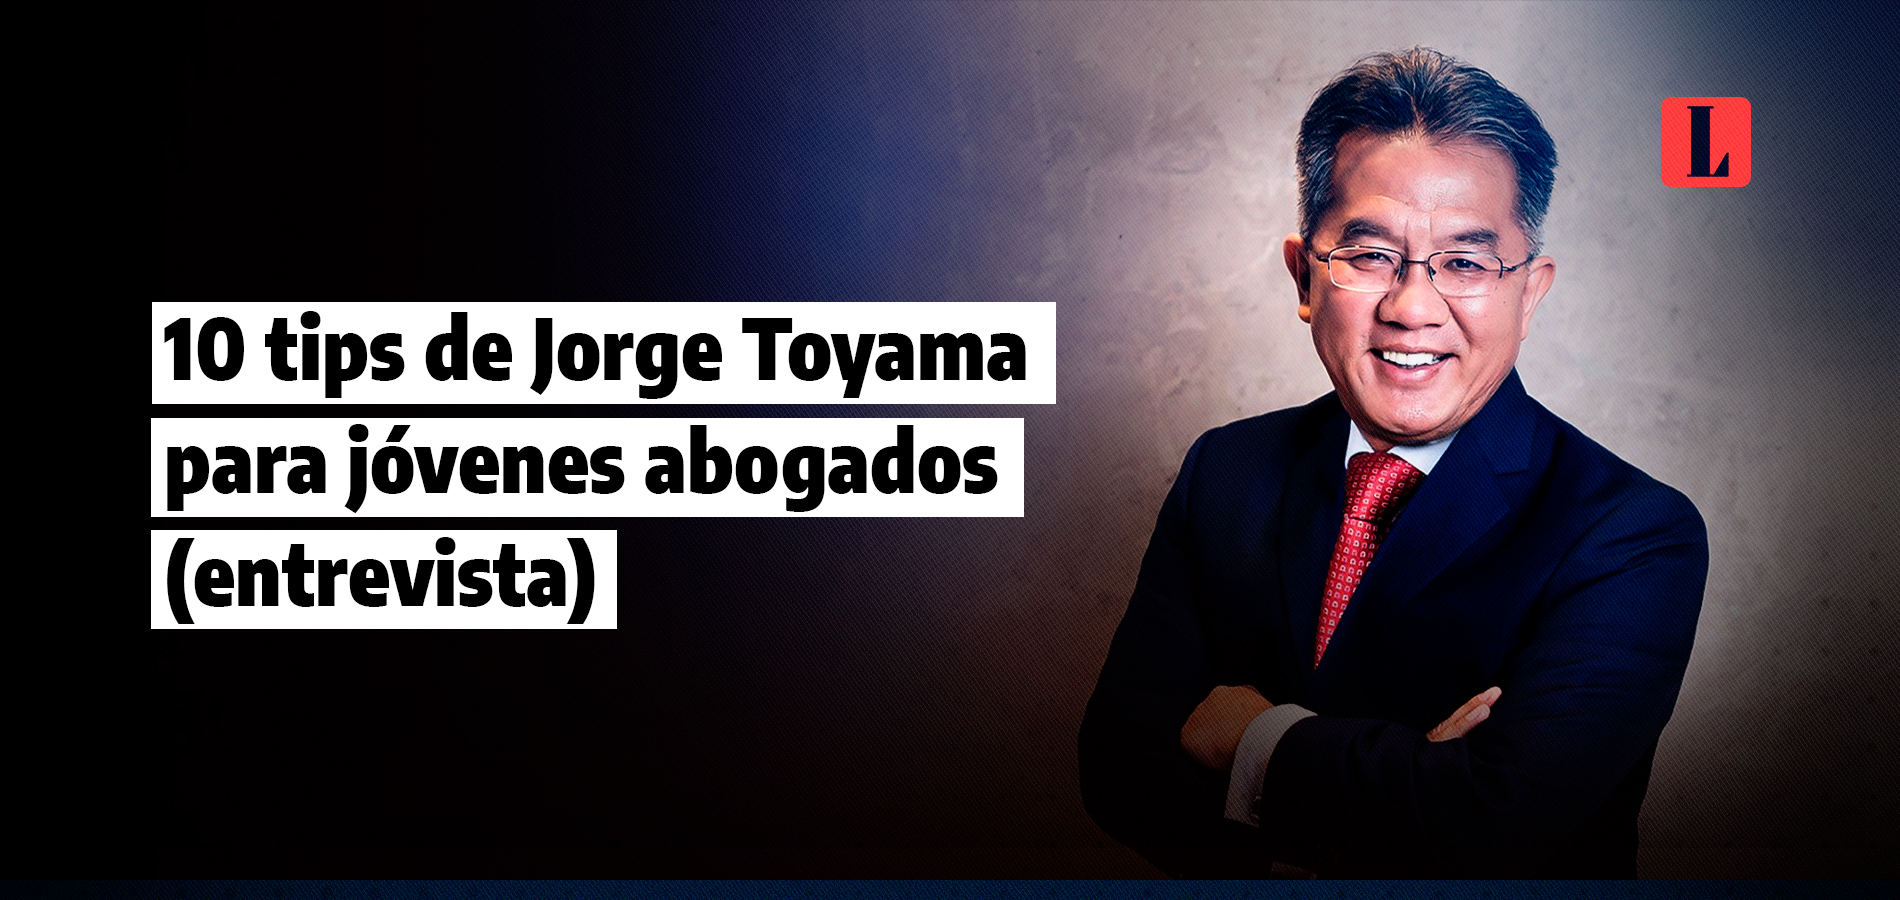 10 tips de Jorge Toyama para jóvenes abogados (entrevista)